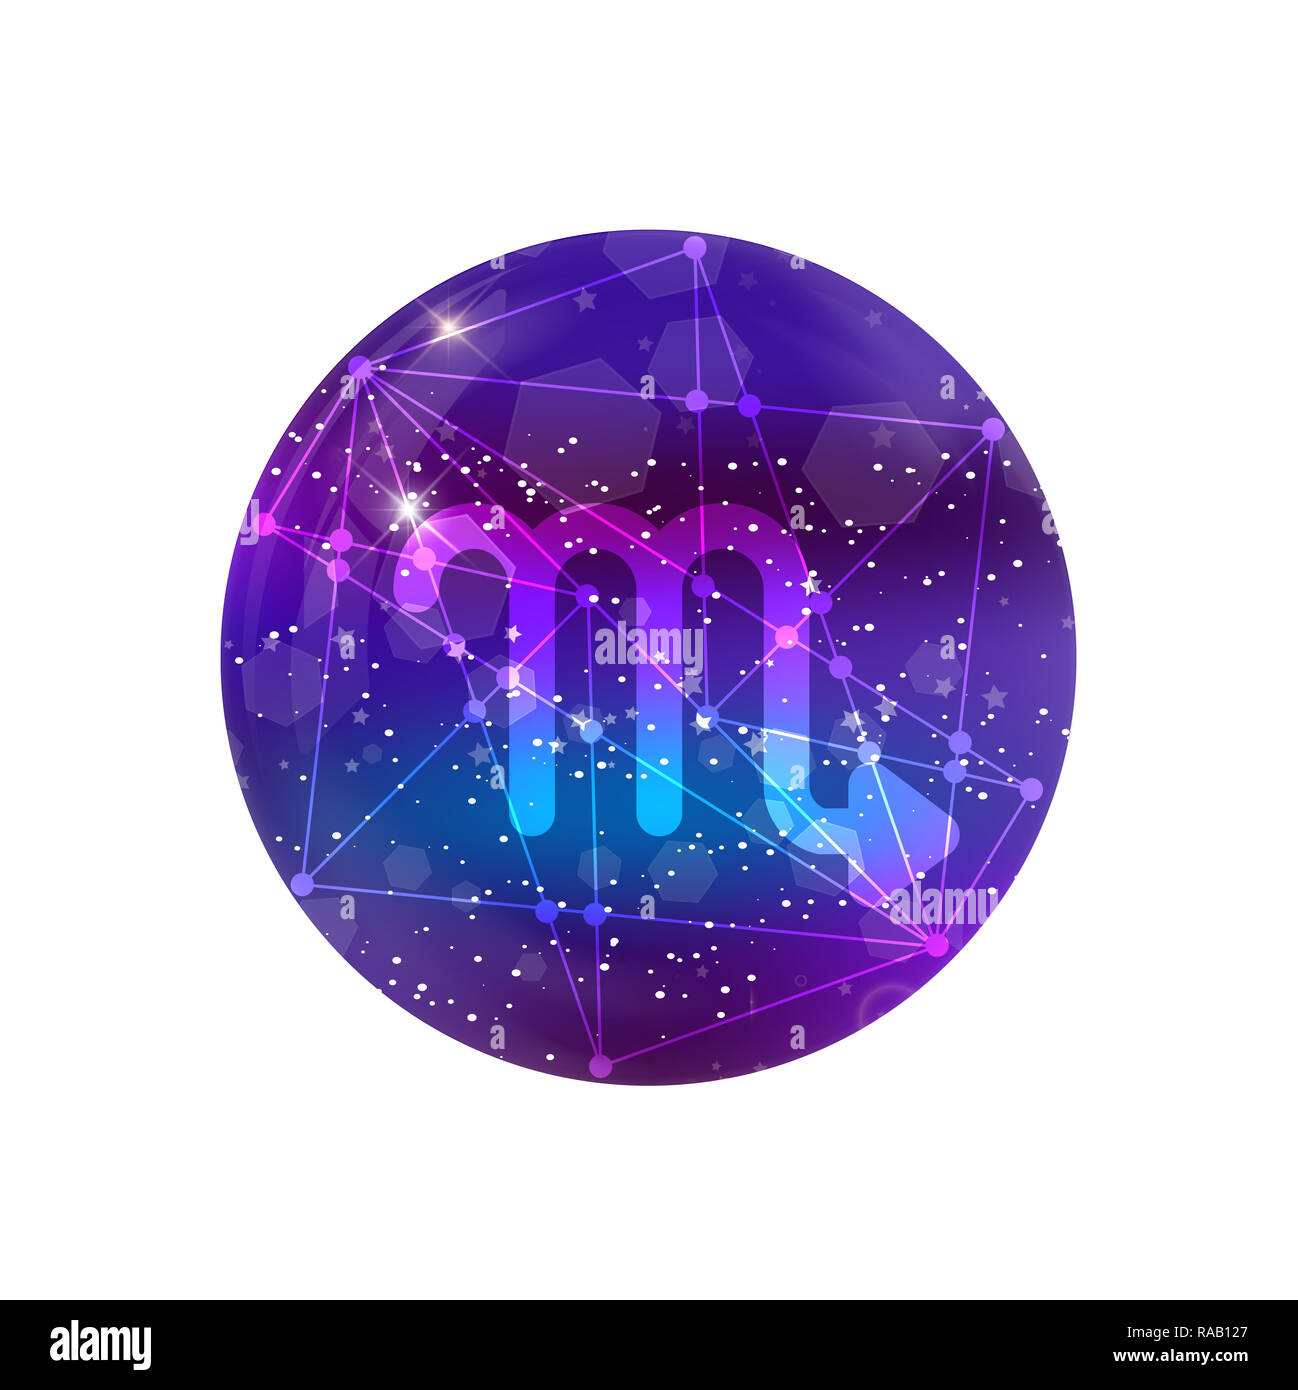 Scorpione segno zodiacale e costellazione sul cosmica cielo viola con stelle luccicanti e nebula isolati su sfondo bianco. icona al neon, pulsante WEB, un clip Foto Stock